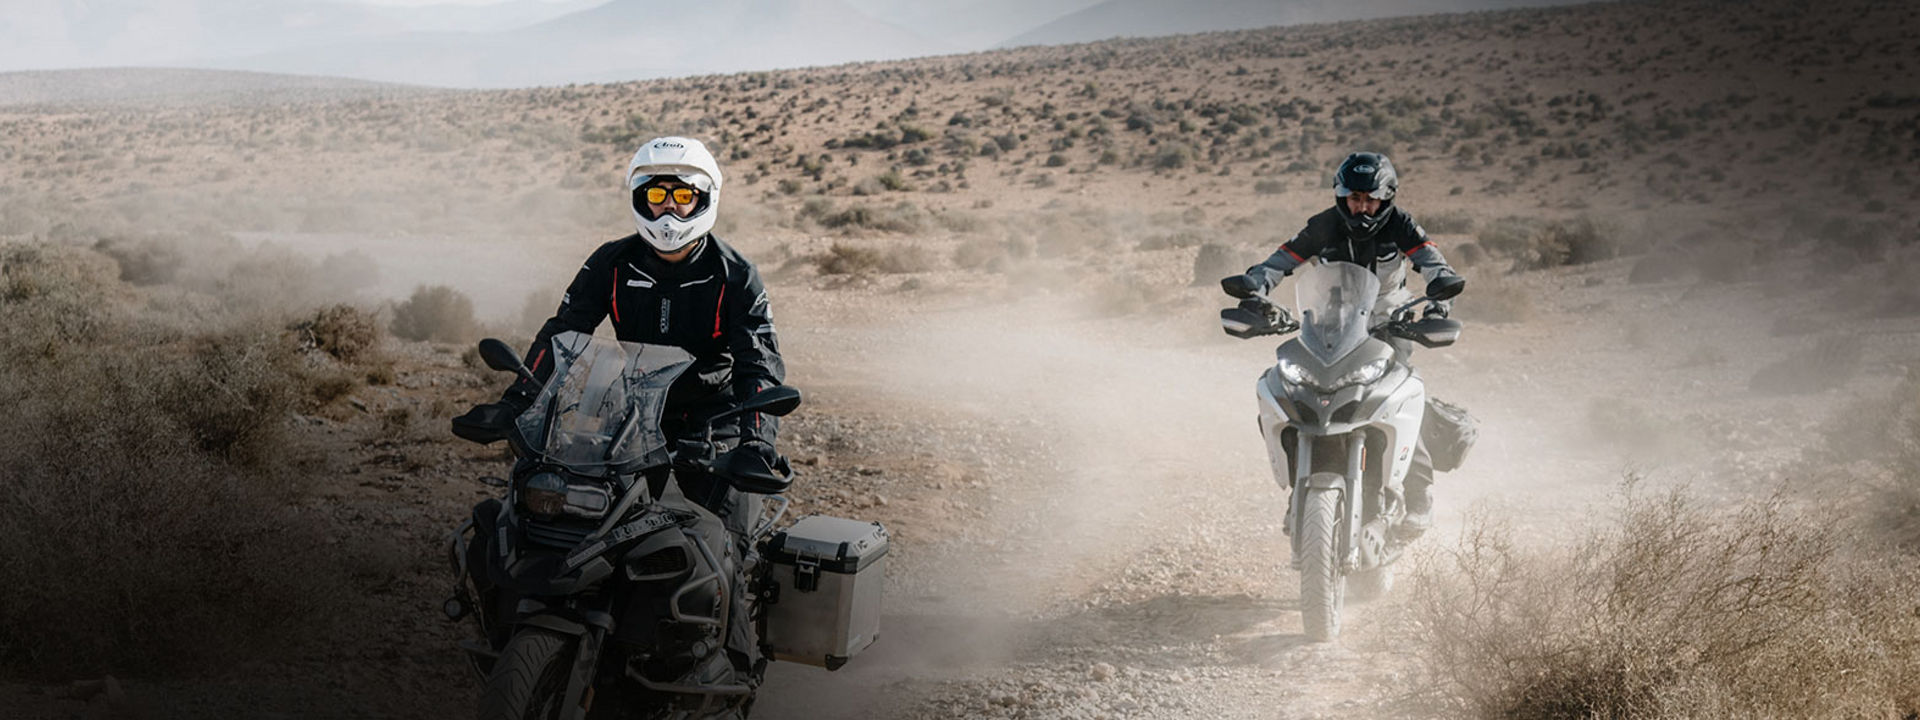 L'immagine mostra due motociclisti che utilizzano pneumatici Bridgestone Adventure durante un'esplorazione nel deserto.